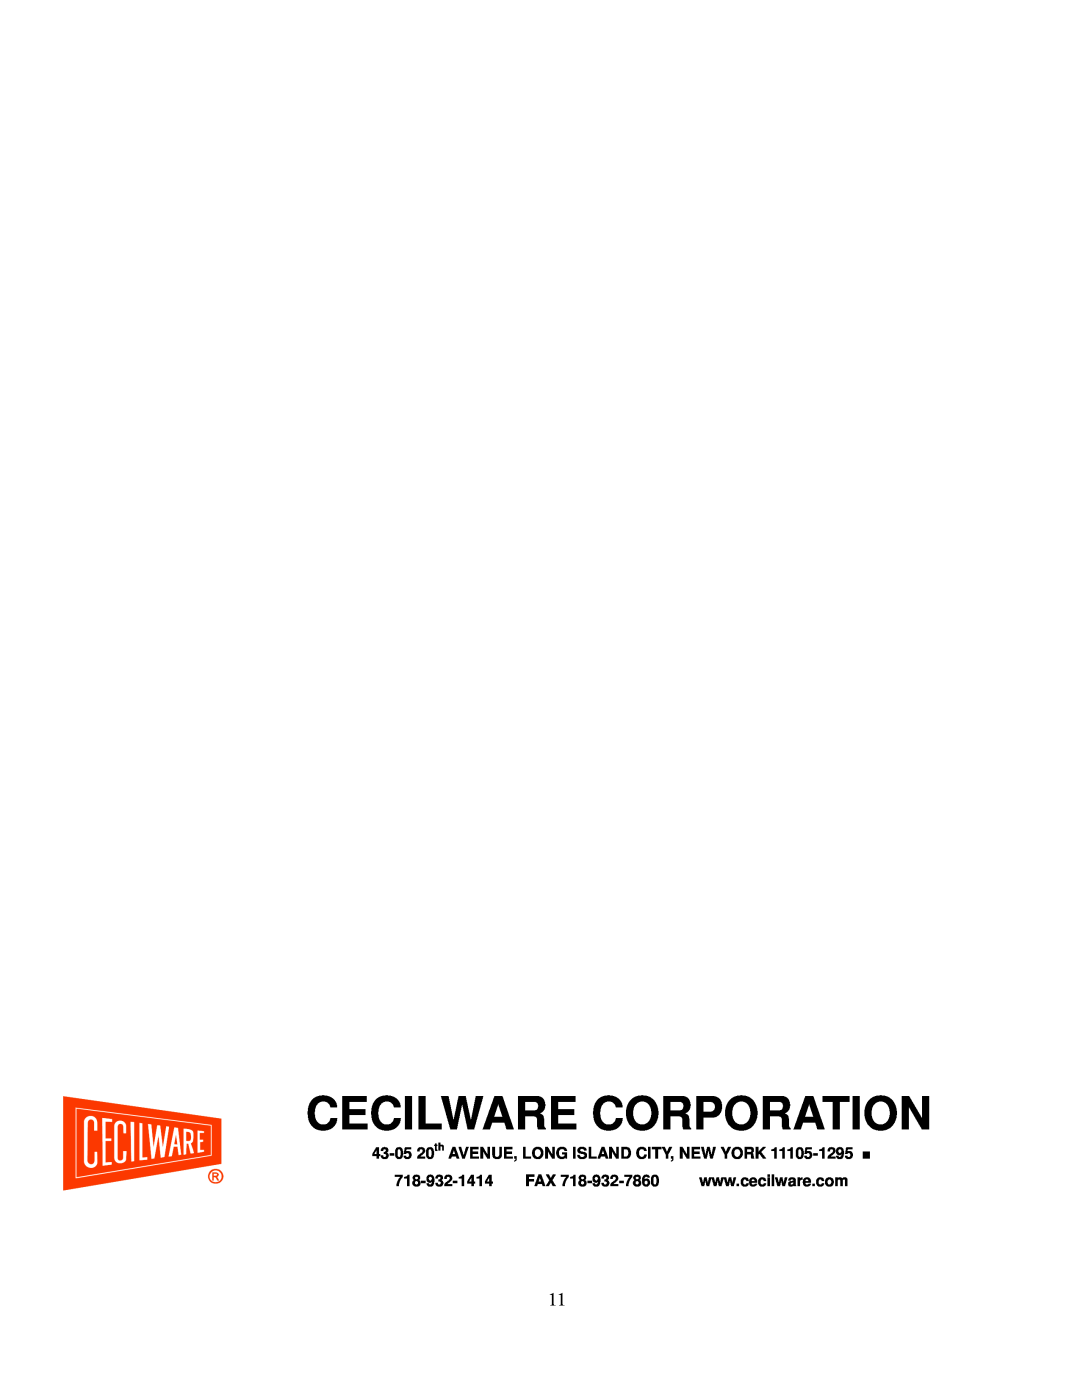 Cecilware EL-1624, EL-1636 operation manual Cecilware Corporation, 43-05 20th AVENUE, LONG ISLAND CITY, NEW YORK 